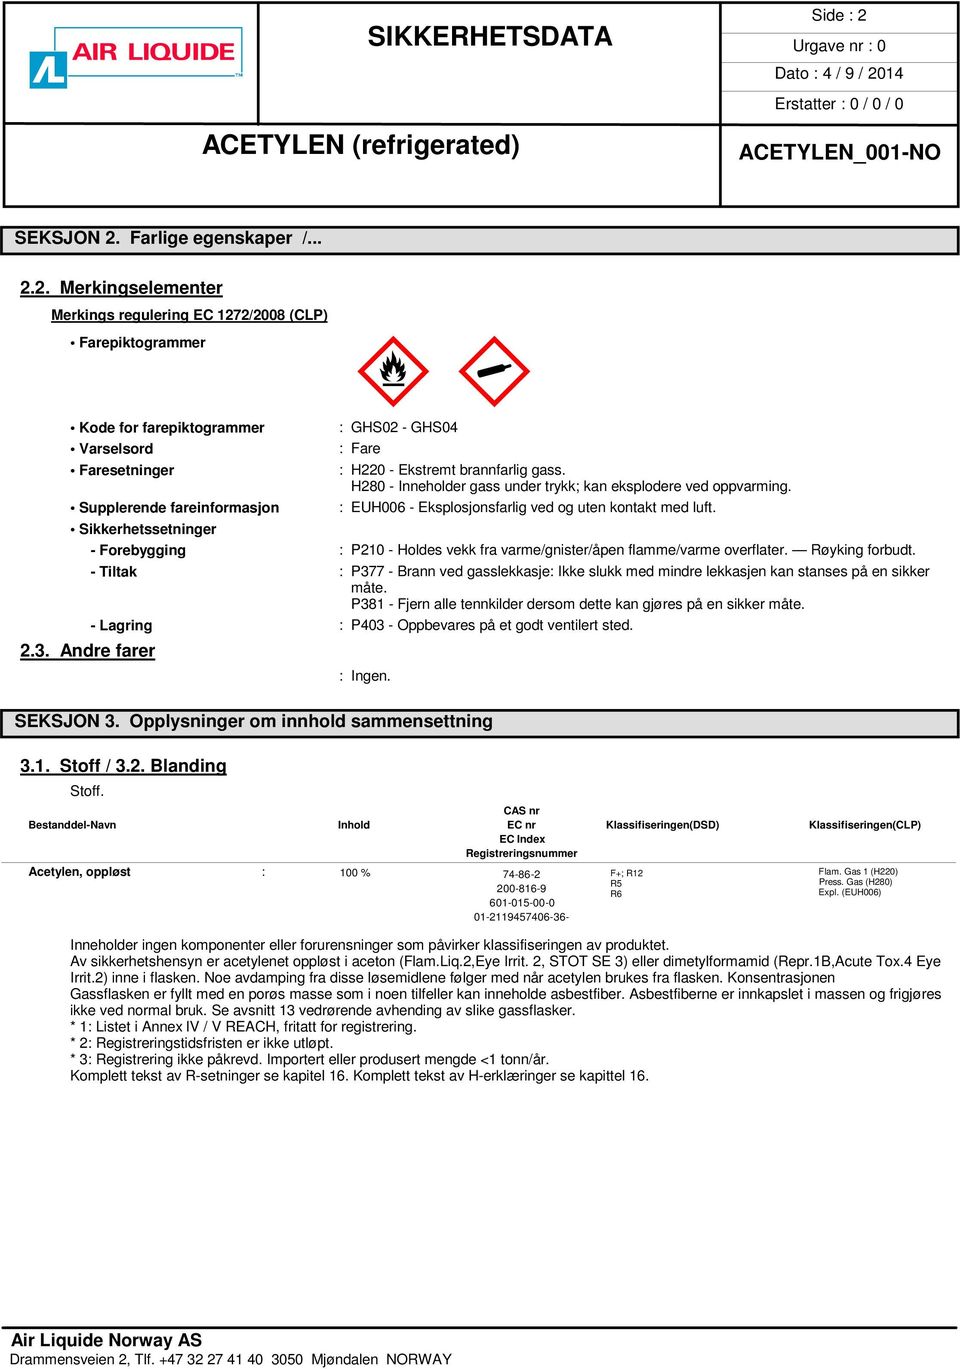 Sikkerhetssetninger - Forebygging : P210 - Holdes vekk fra varme/gnister/åpen flamme/varme overflater. Røyking forbudt.